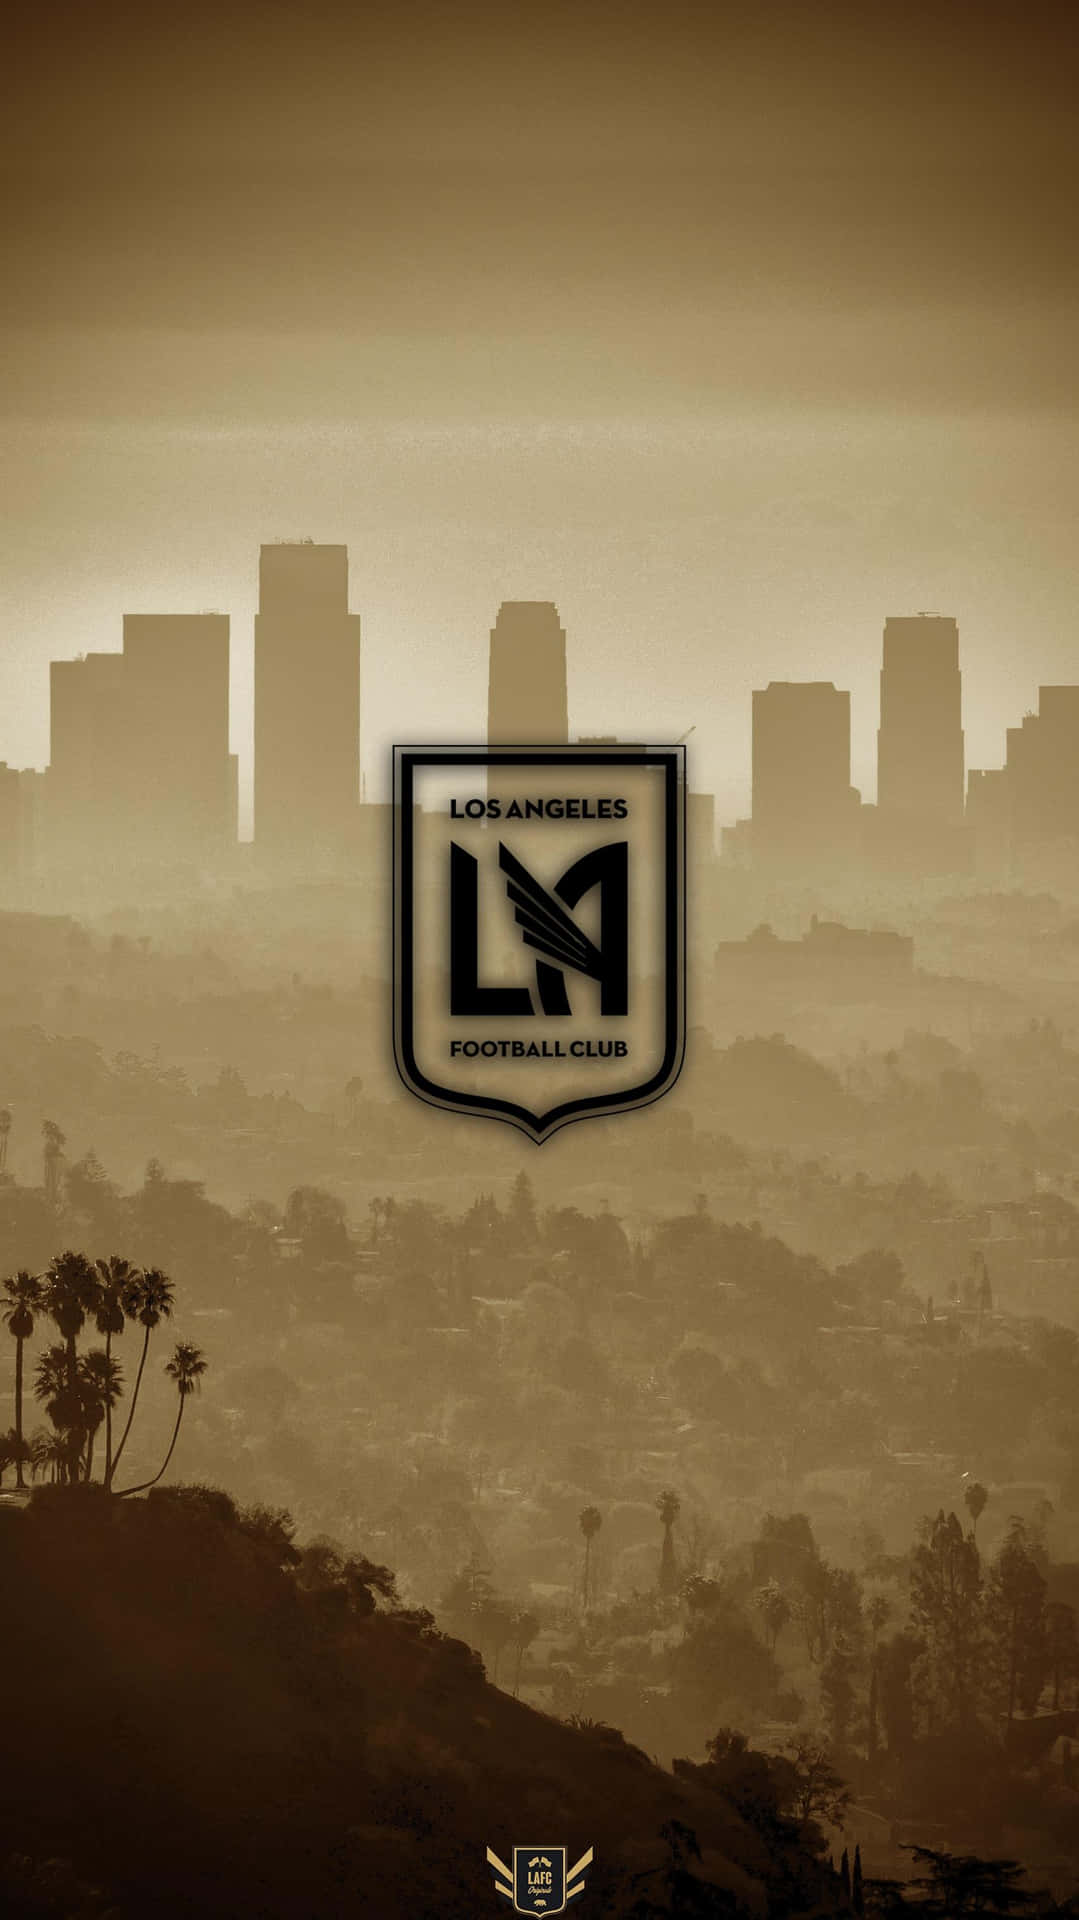 Artedigital Del Logotipo De Los Angeles Fc En Un Fondo De La Ciudad De Los Ángeles. Fondo de pantalla